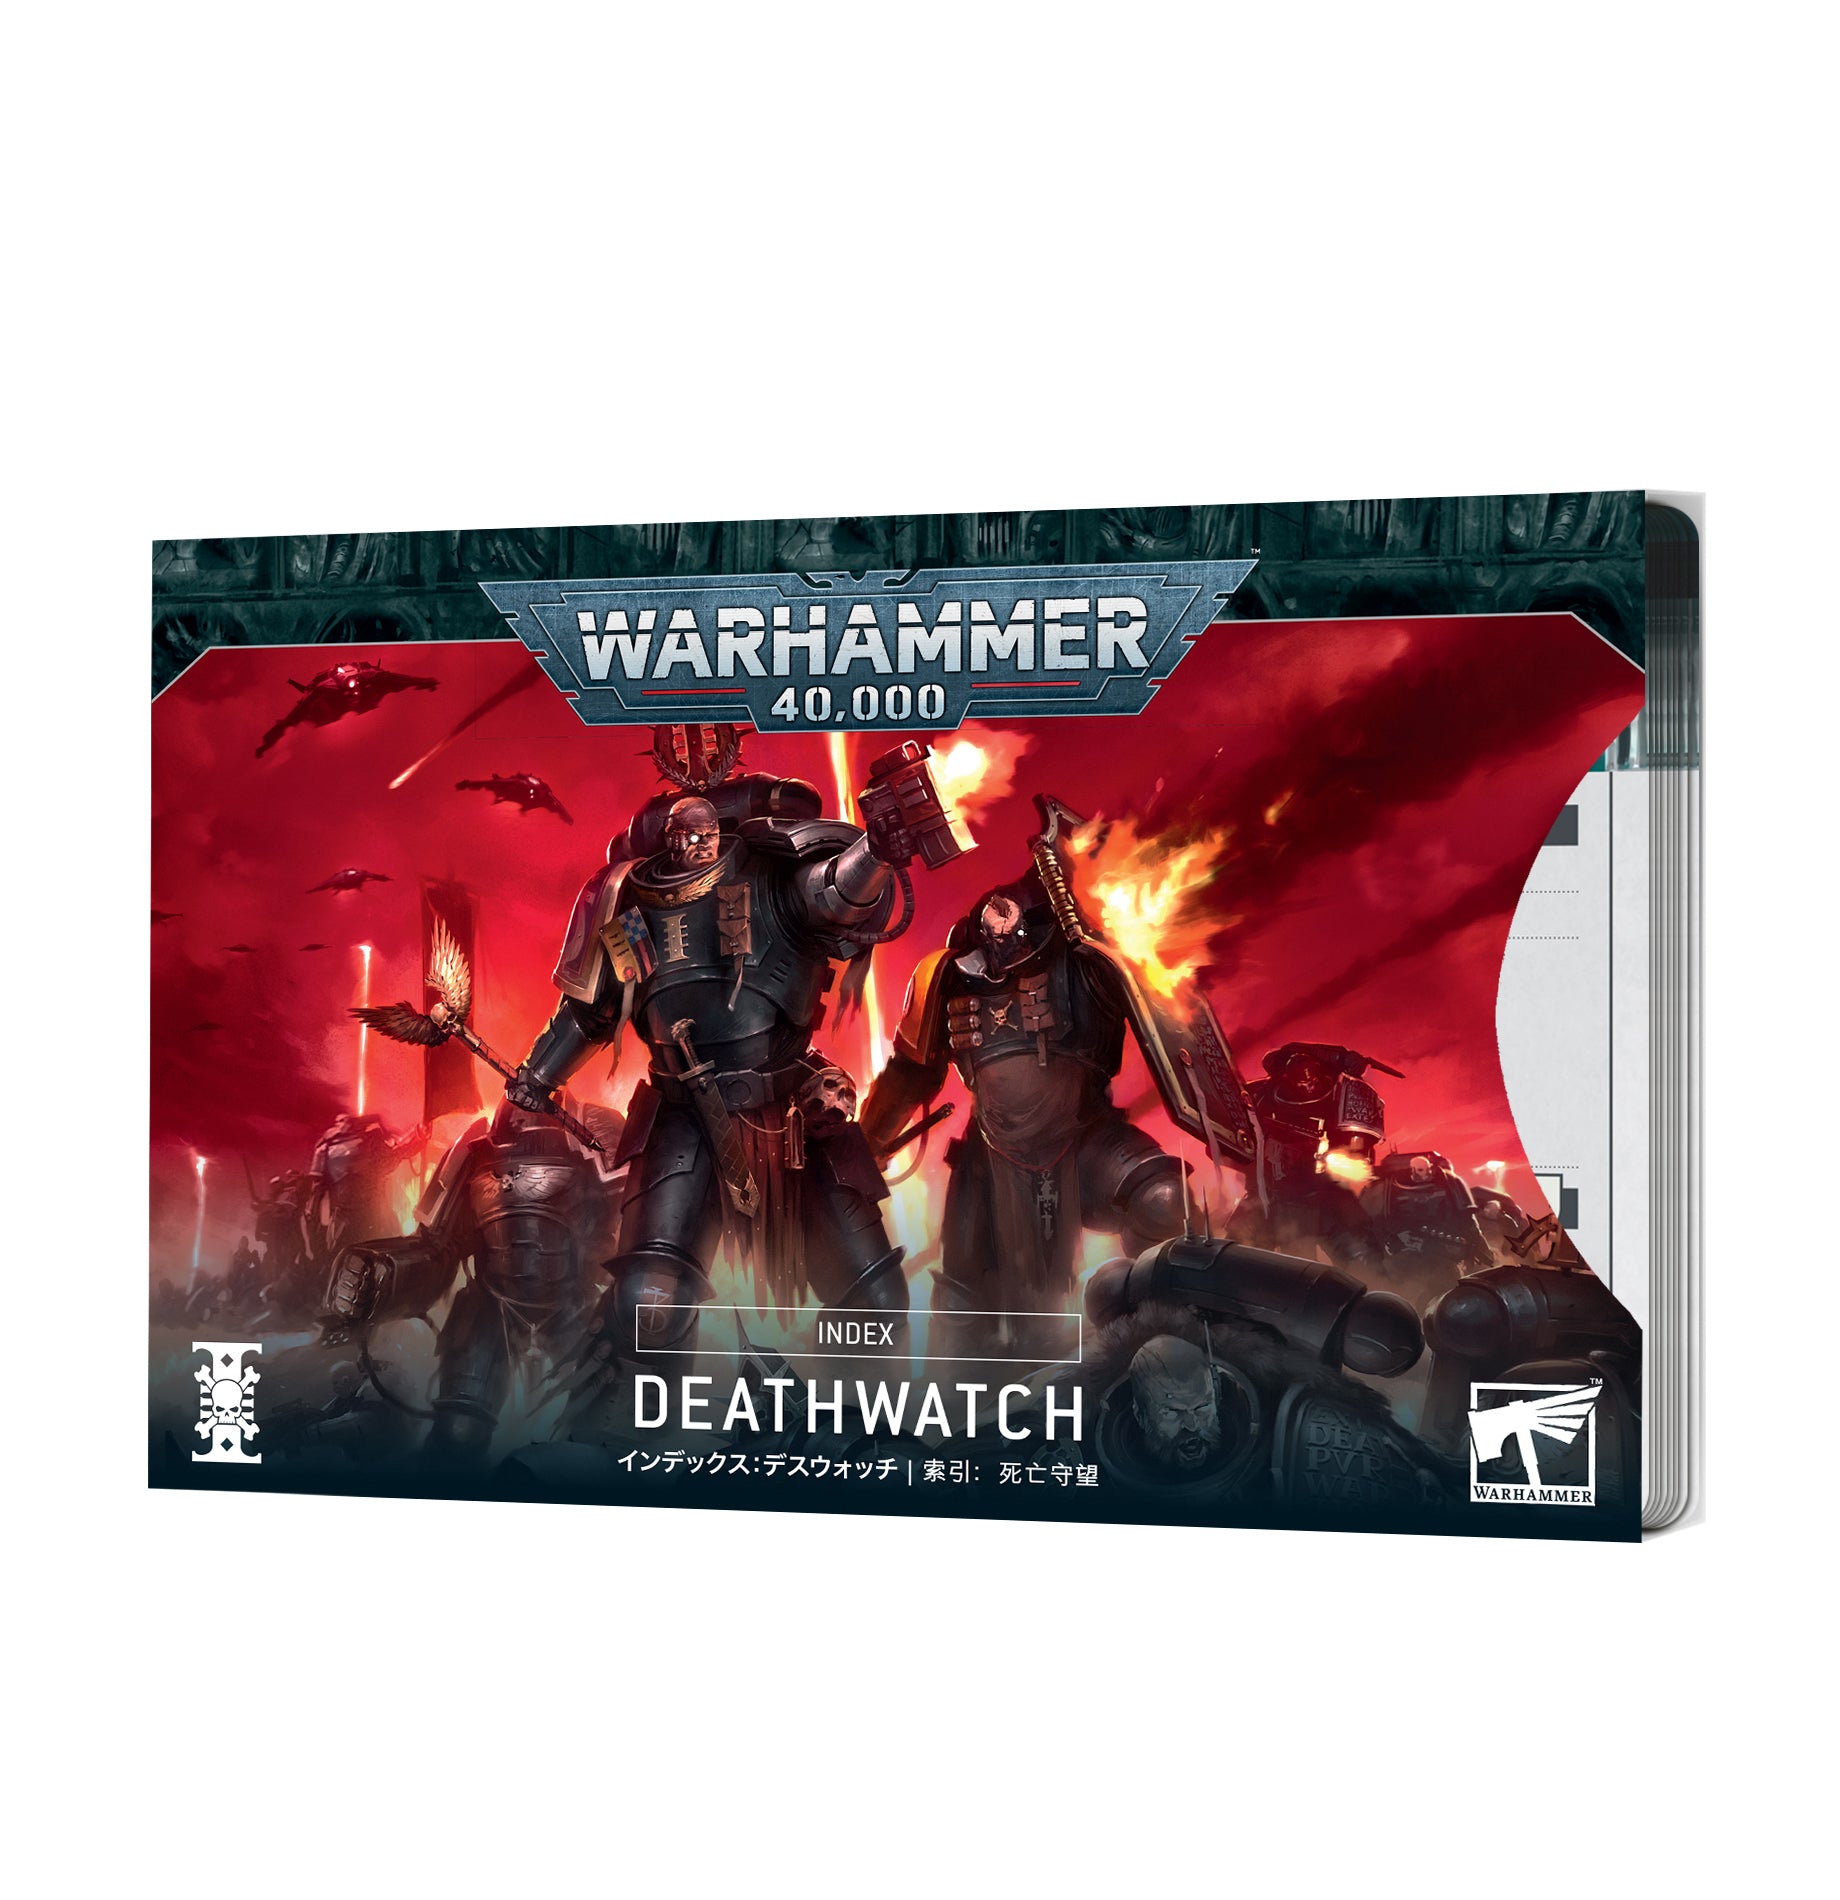 a box of warhammer deathwatch miniatures